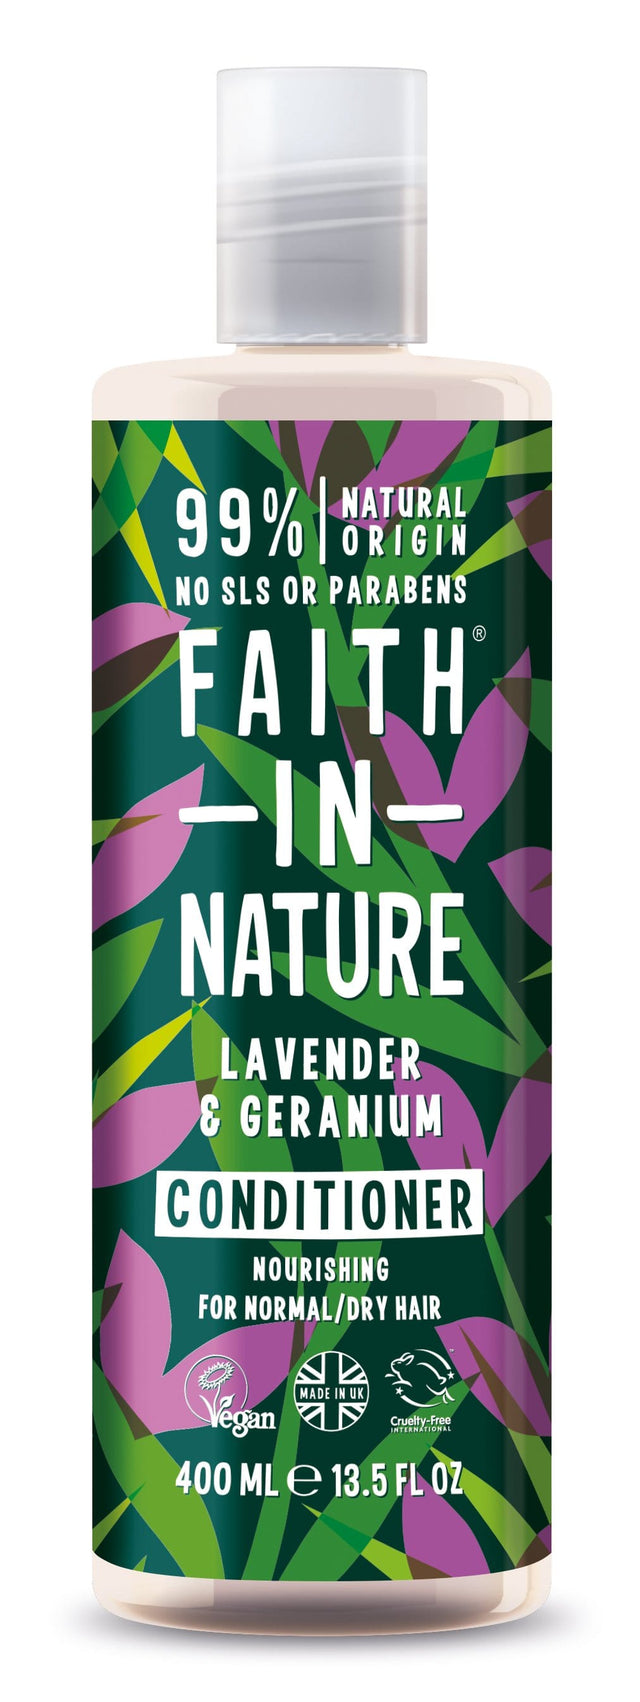 Faith in Nature  Lavender & Geranium Conditioner,  400ml